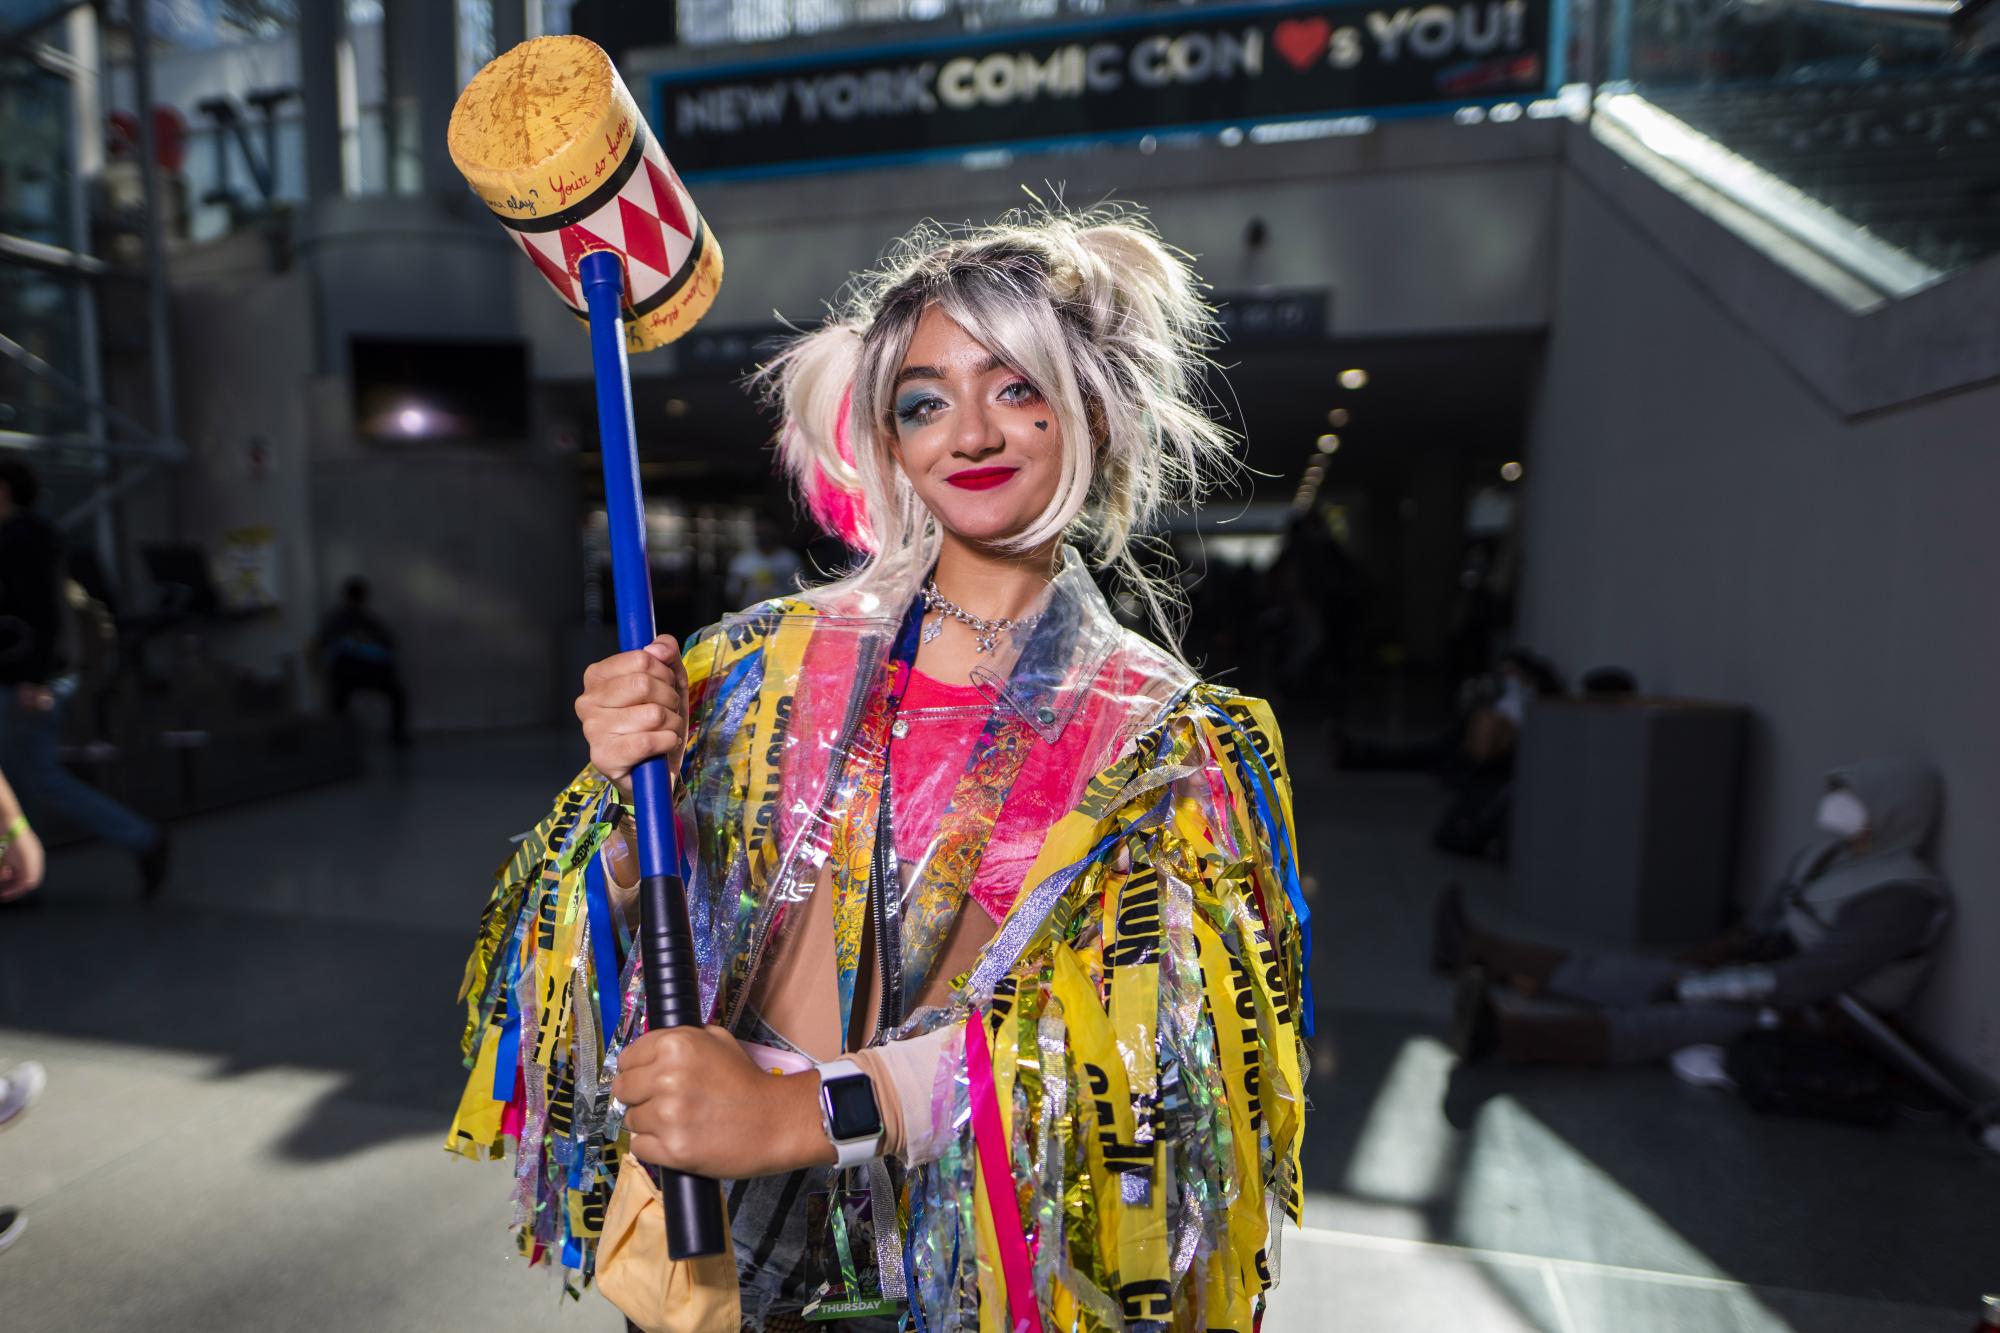 Una asistente vestida como Harley Quinn posa durante la Comic Con de Nueva York en el Centro de Convenciones Jacob K.Javits el jueves 7 de octubre de 2021 en Nueva York. (Foto de Charles Sykes / Invision / AP)